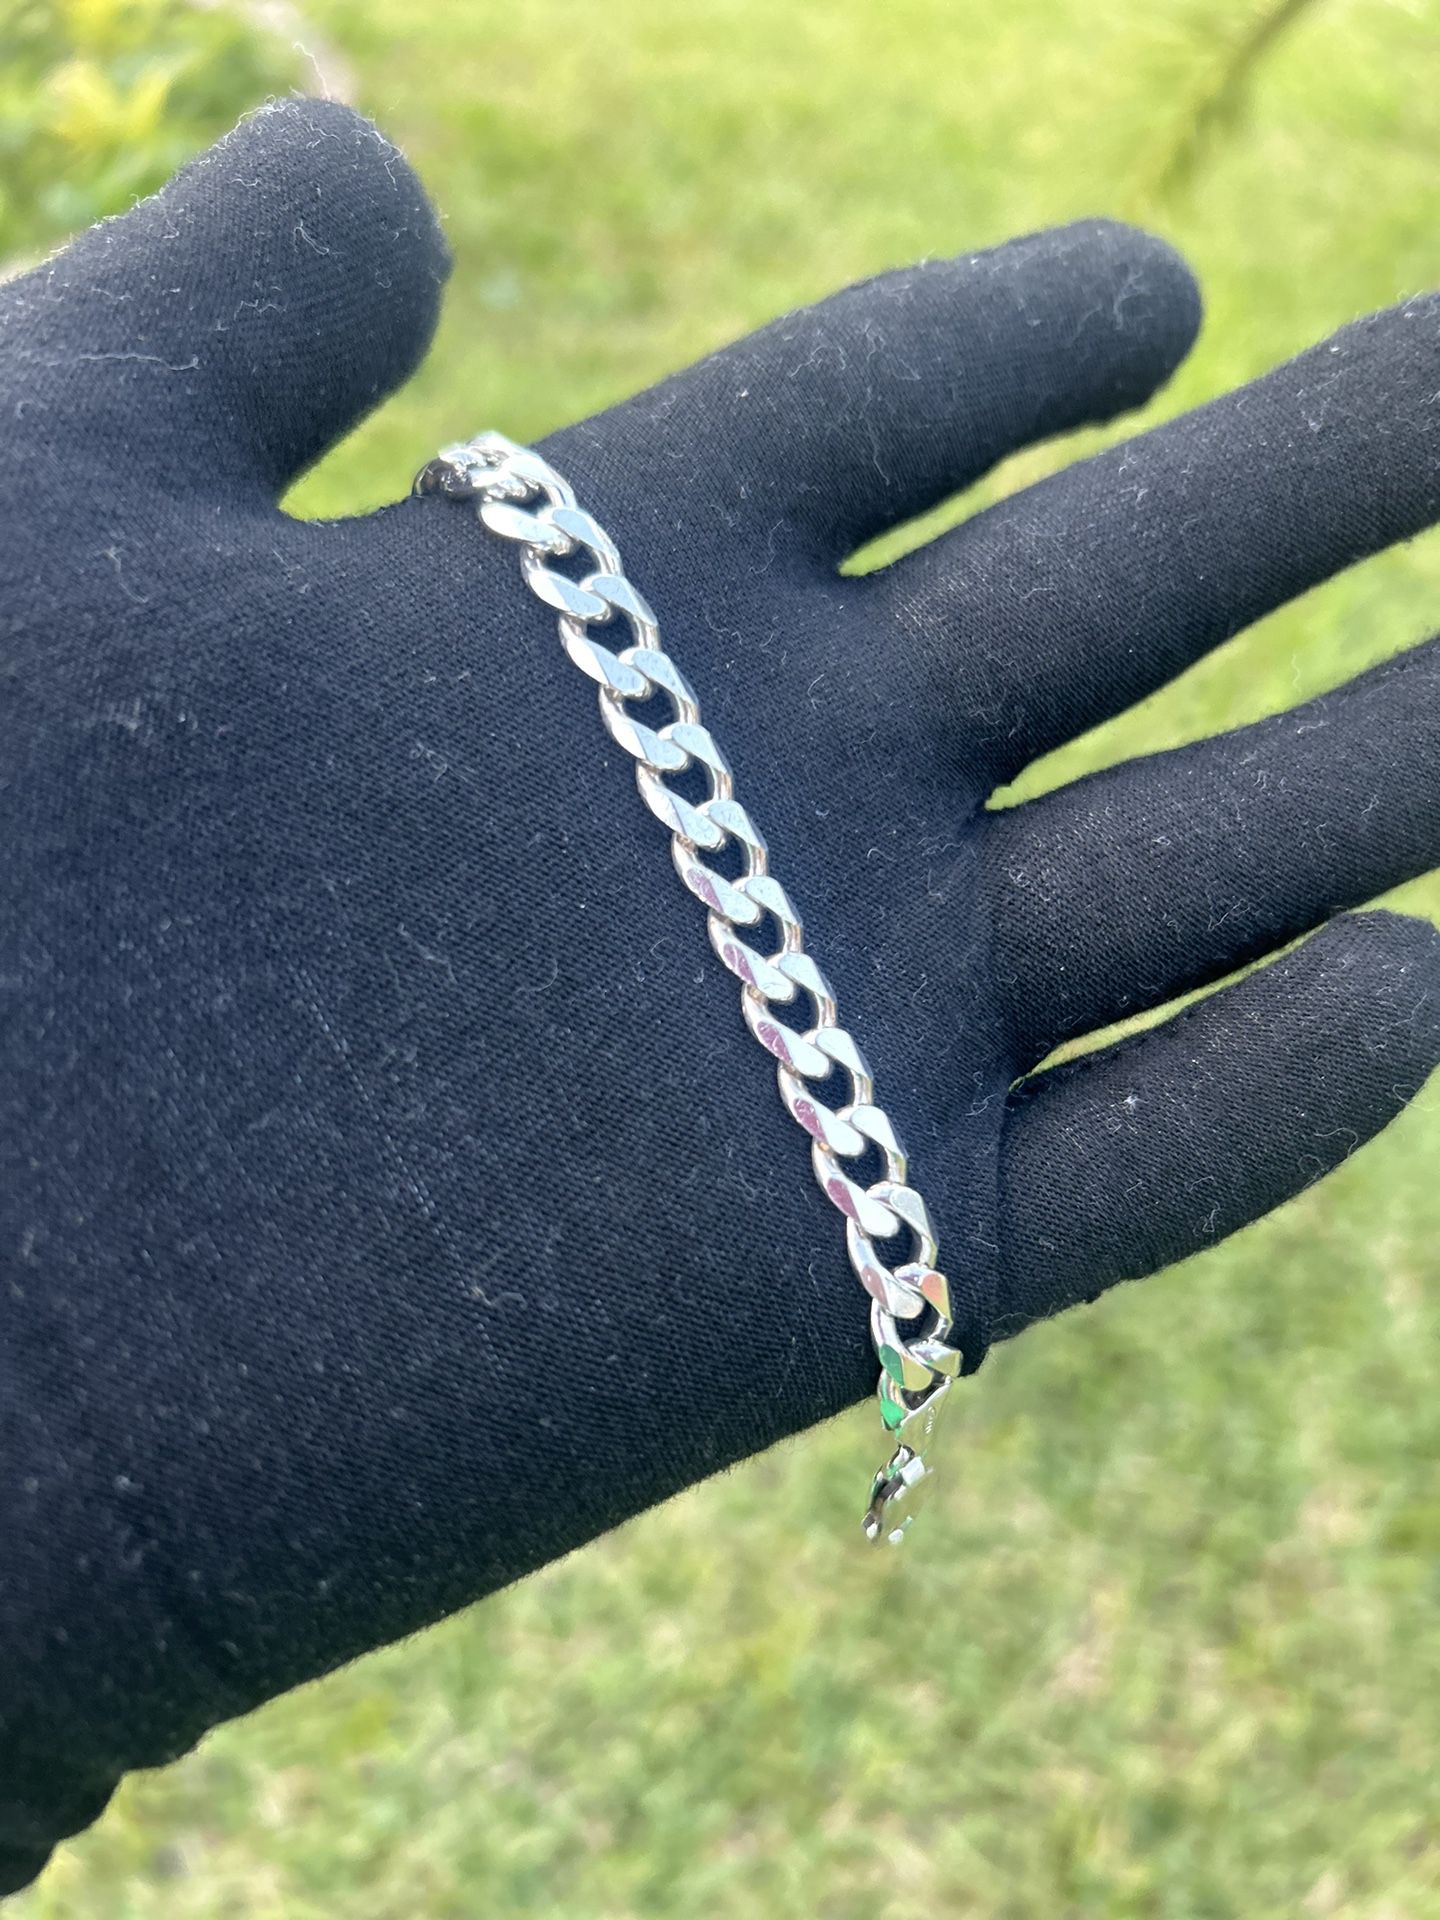 Men’s Silver Curb Link Bracelet 8 Inch 21 Grams 8 MM - Make An Offer